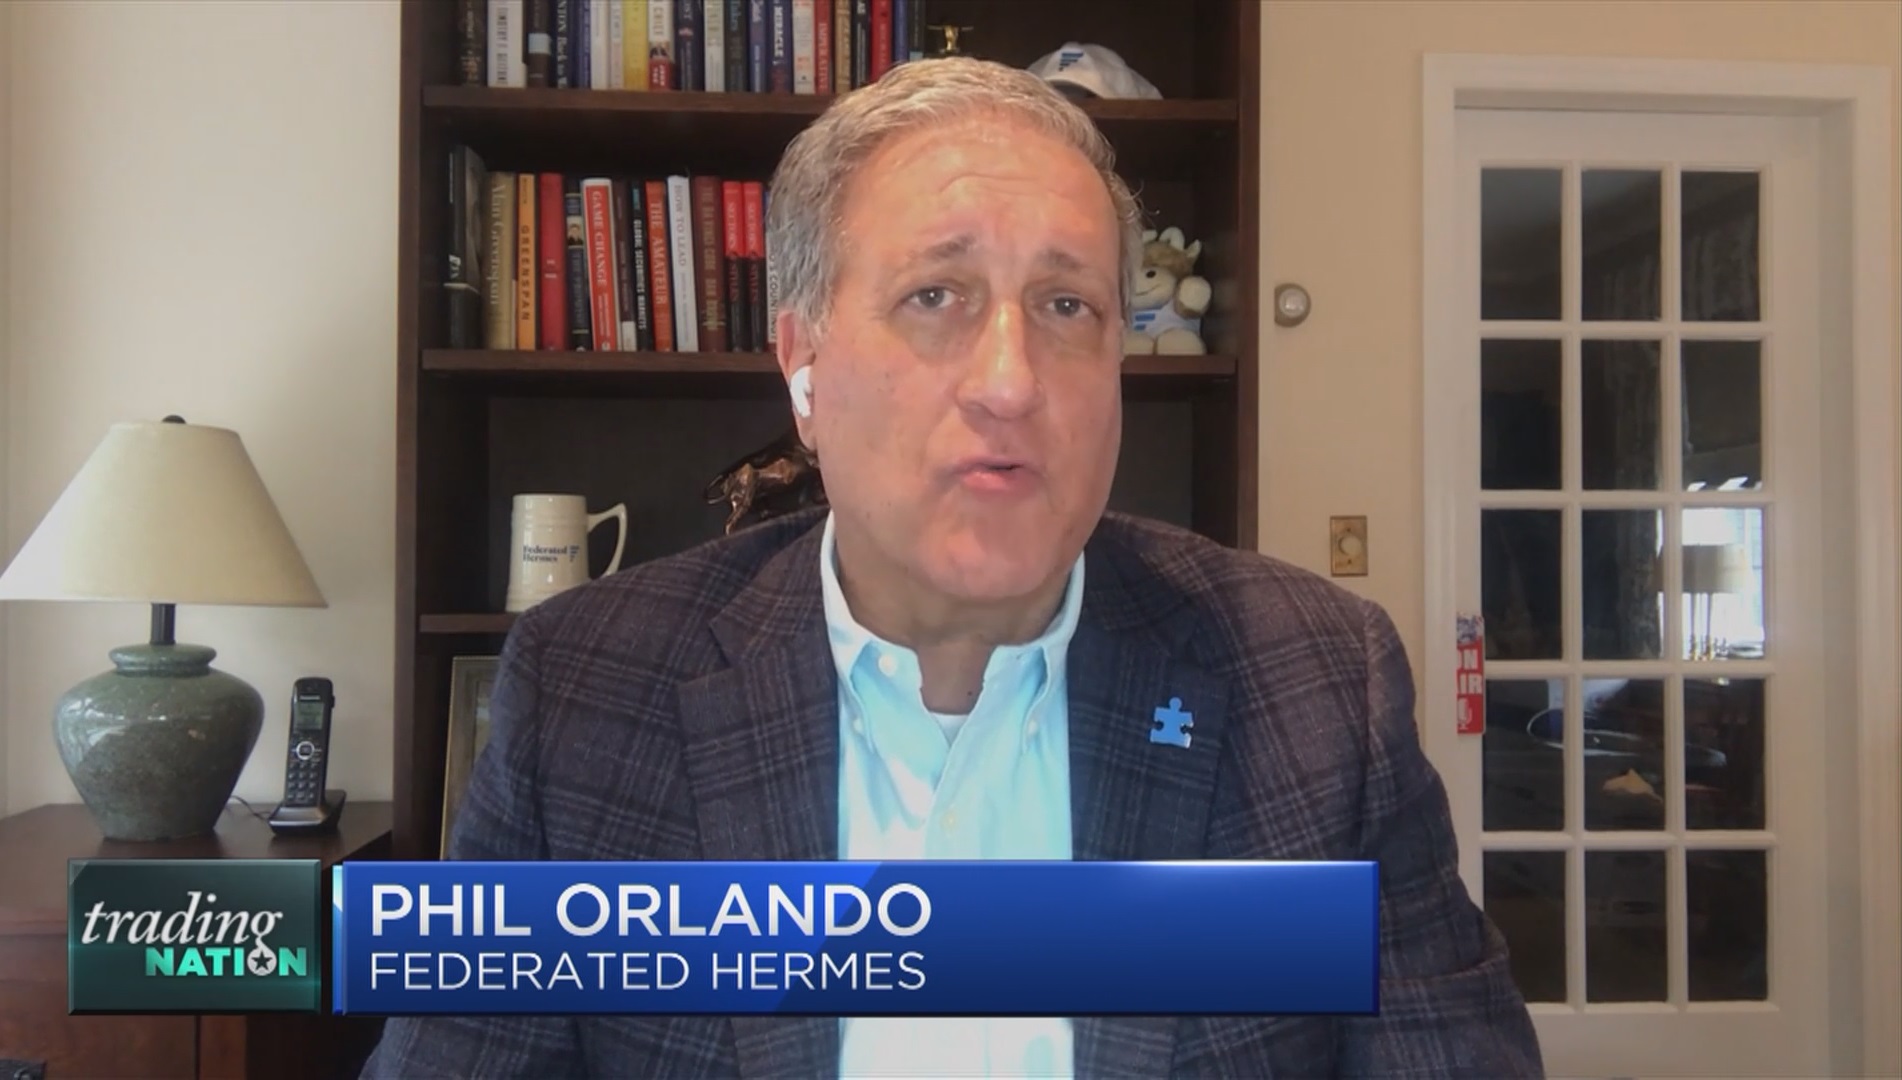 Phil Orlando, người điều hành quỹ quản lý Federated Hermes trị giá 619 tỷ USD